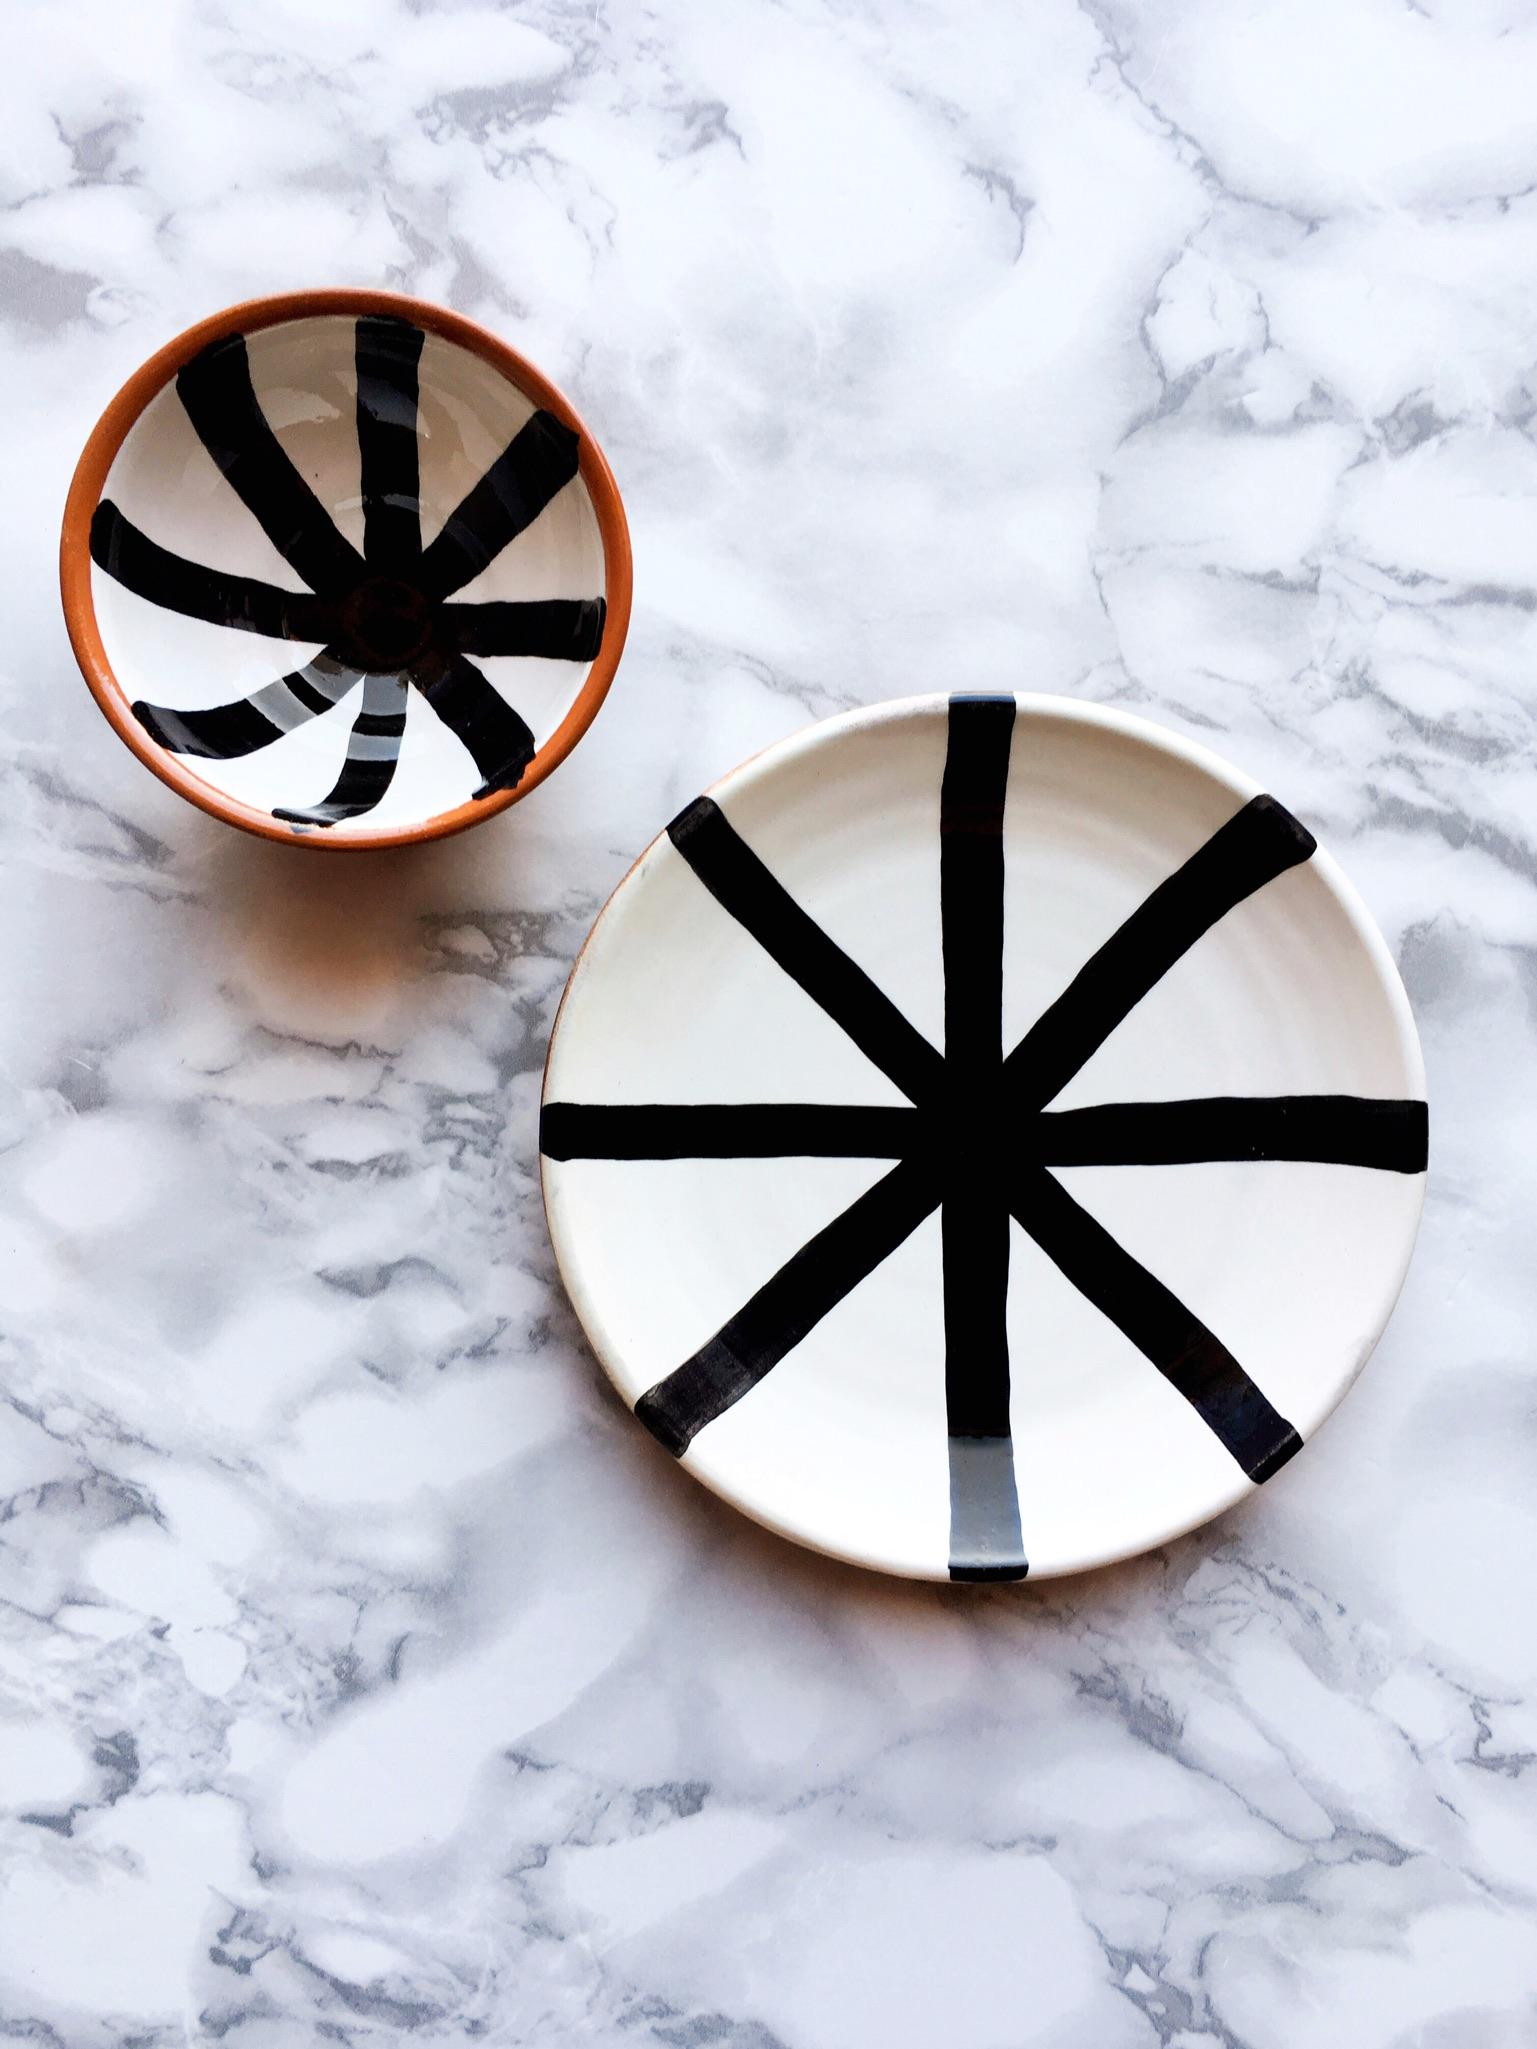 Portuguese Handmade Ceramic Segment Salad Plate with Graphic Black & White Design, in Stock